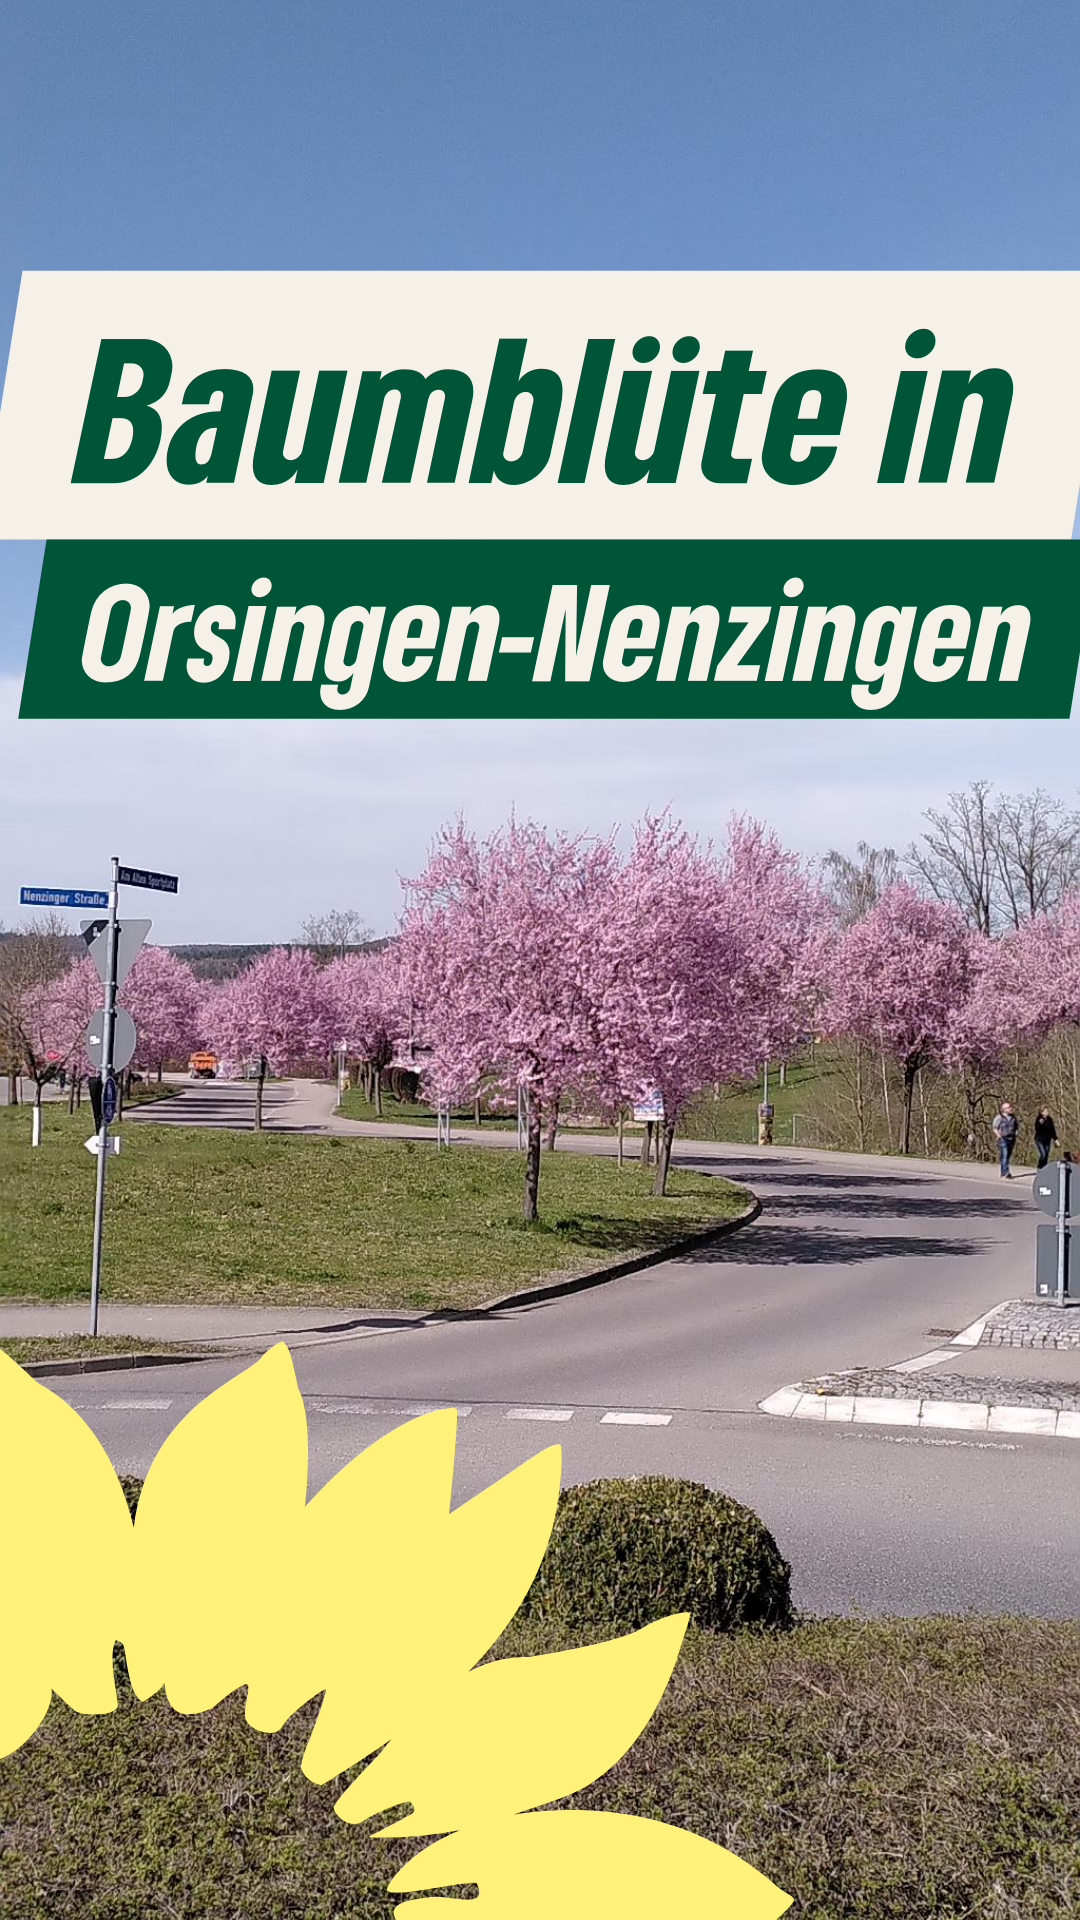 Die Baumblüte am Ortseingang Orsingen von Nenzingen her kommend